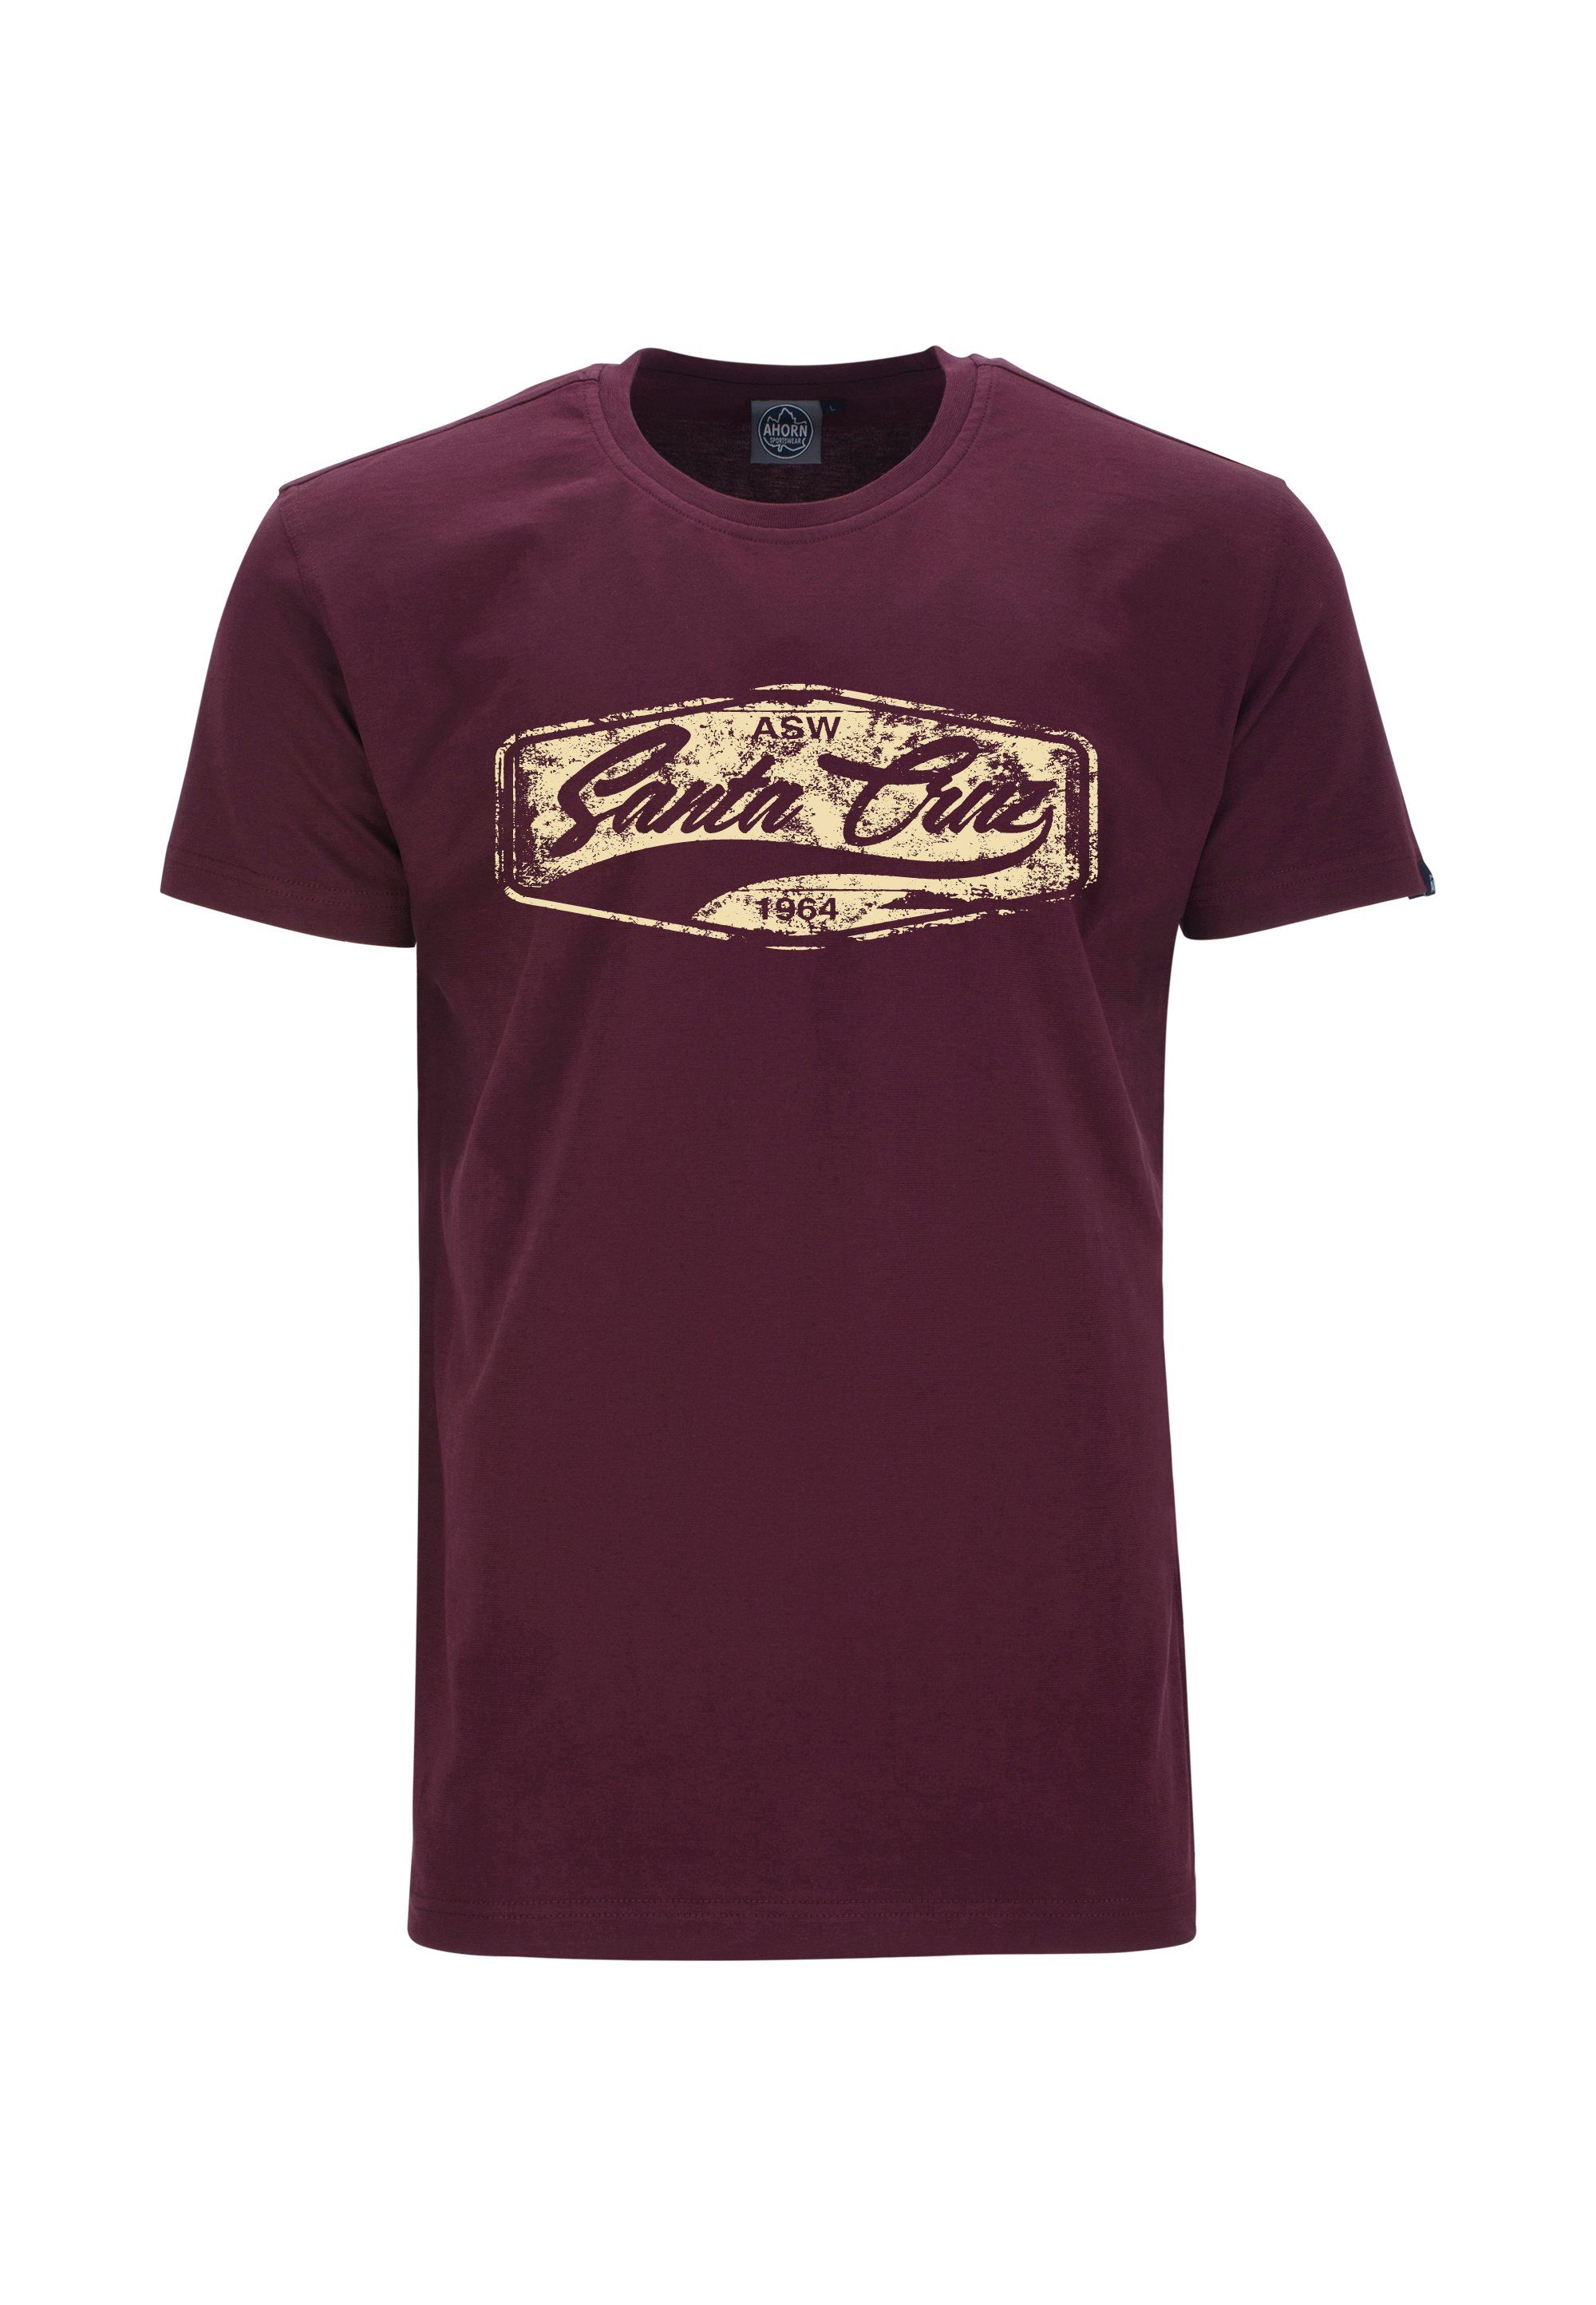 AHORN SPORTSWEAR T-Shirt SANTA CRU mit modischem Frontprint weinrot | Sport-T-Shirts